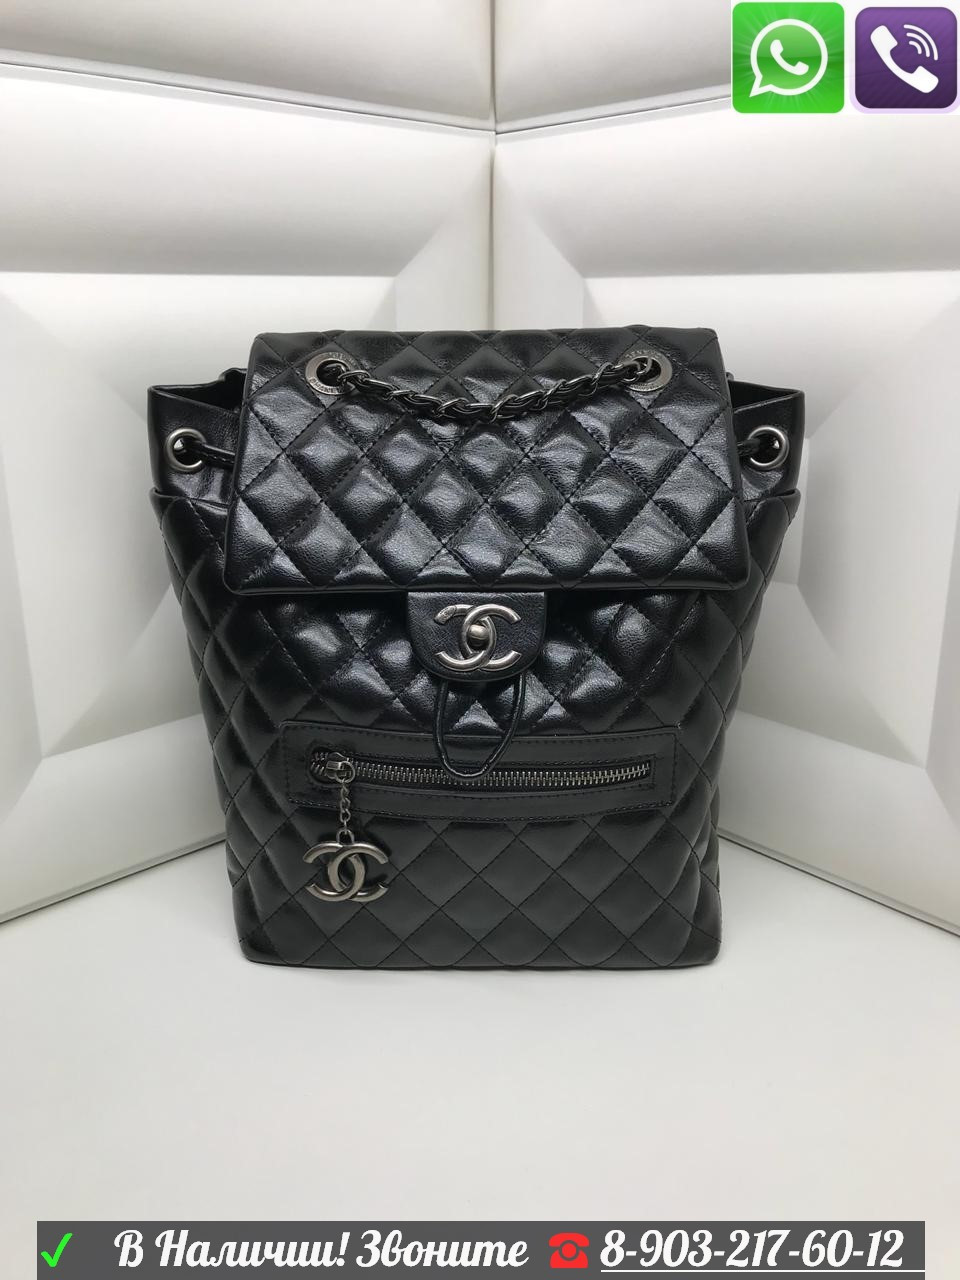 Рюкзак Chanel черный стеганный Шанель